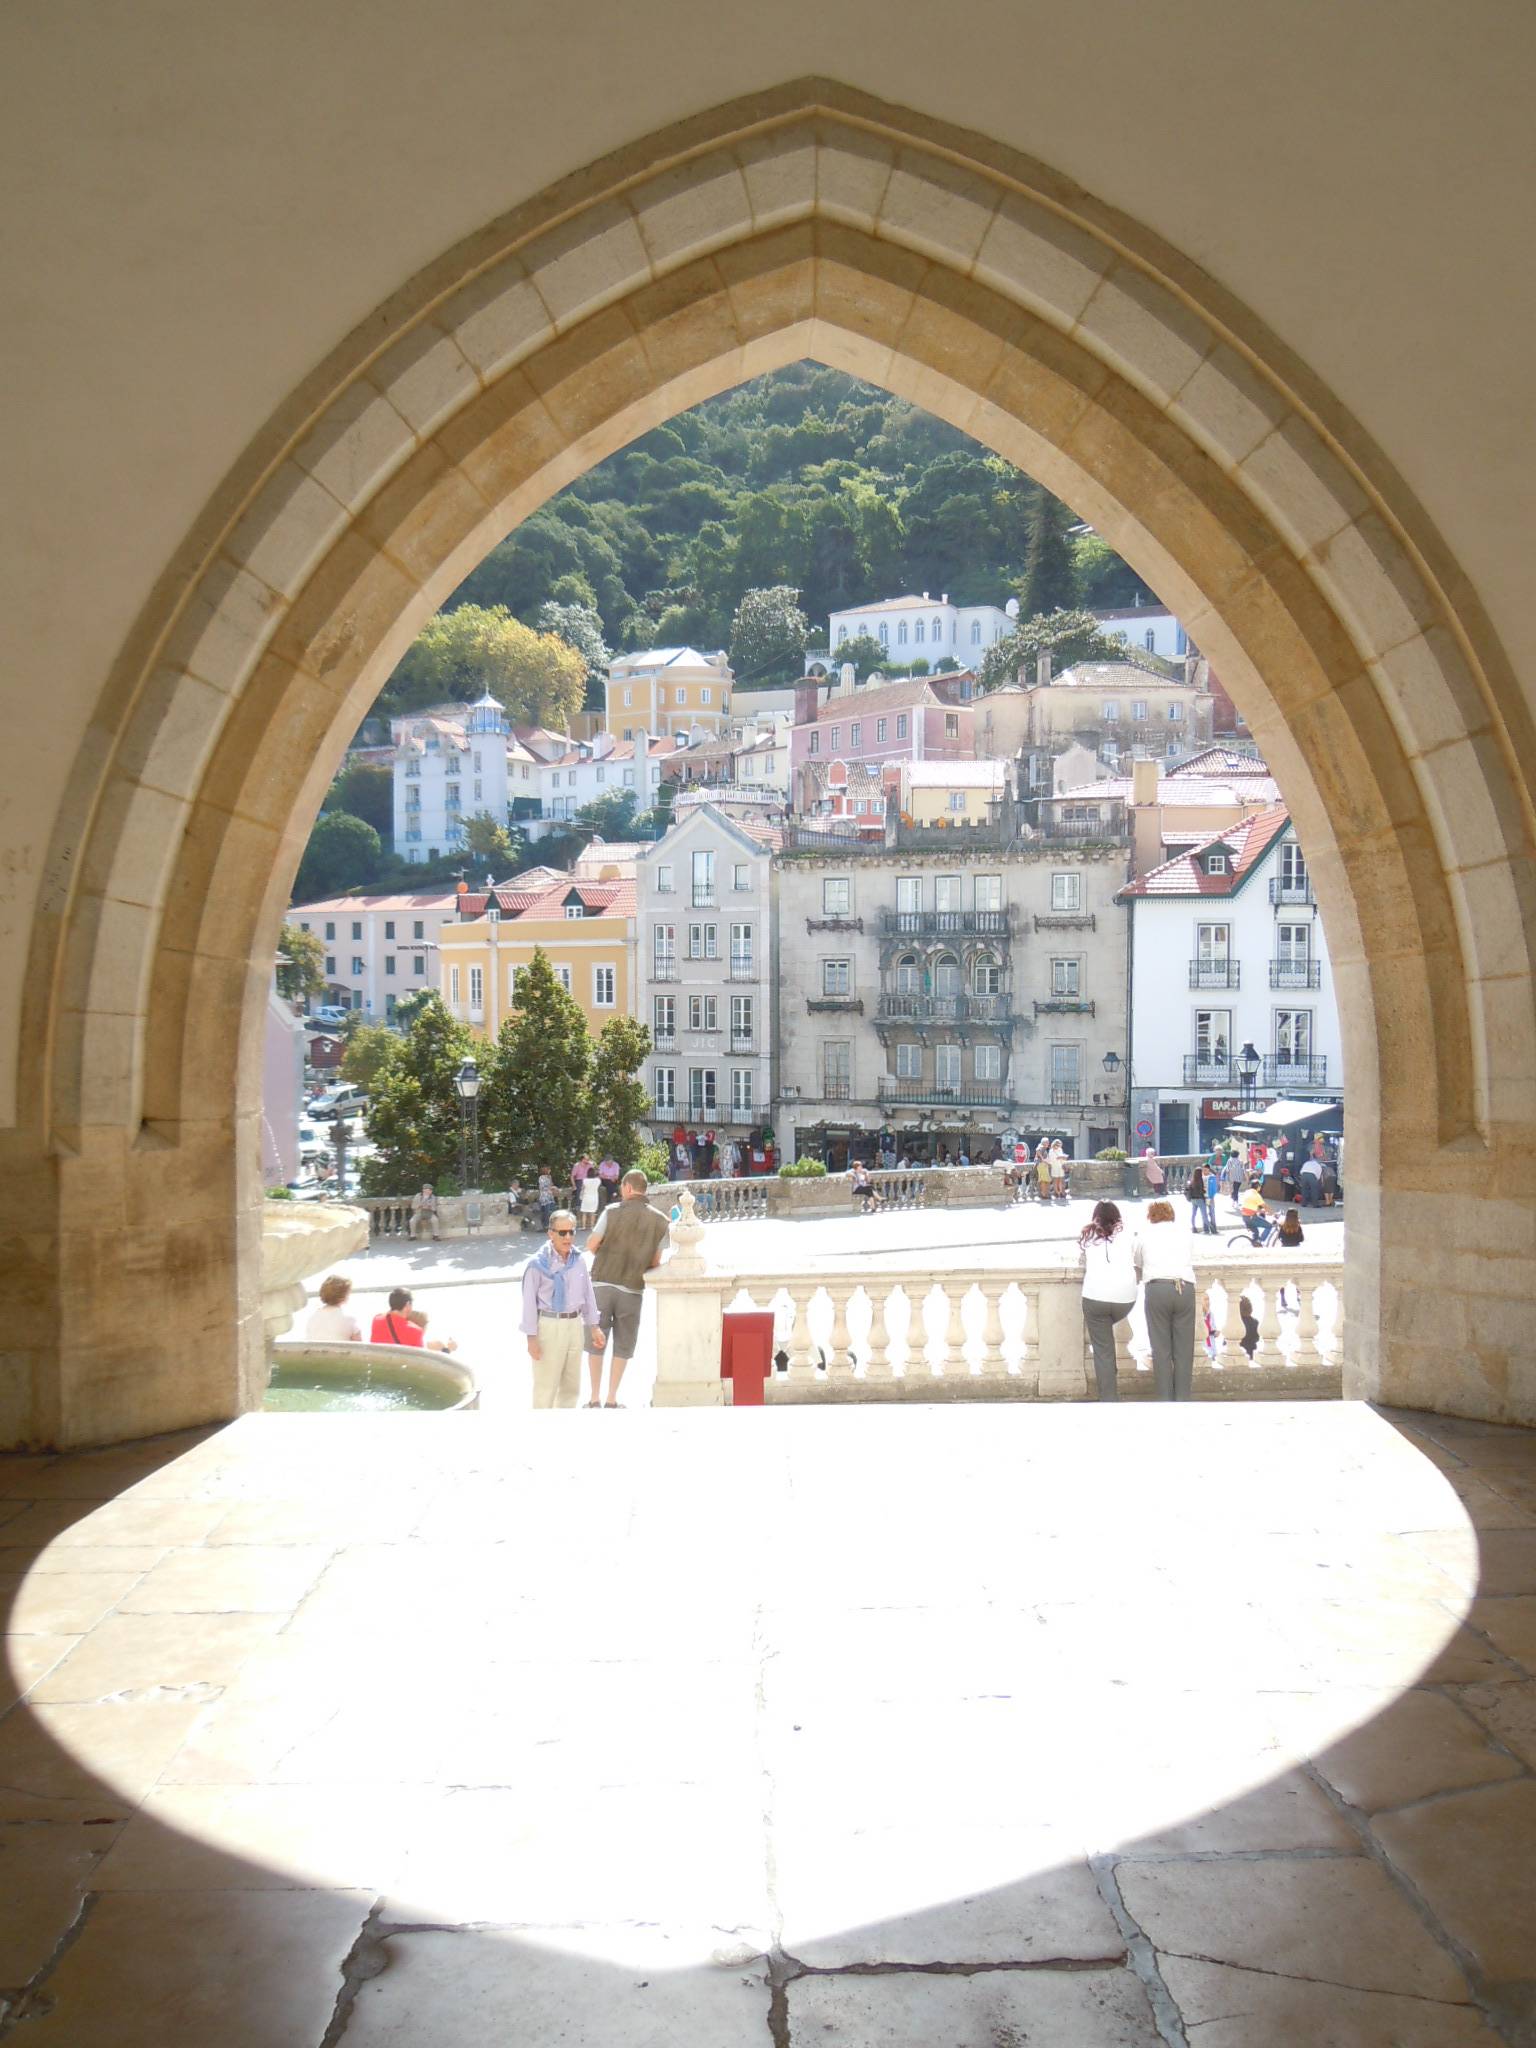 מגזין מקו ועד תרבות / מיזם דיגיטלי ללא צרכי רווח פורטוגל כיעד תיירותי - הפתעה  